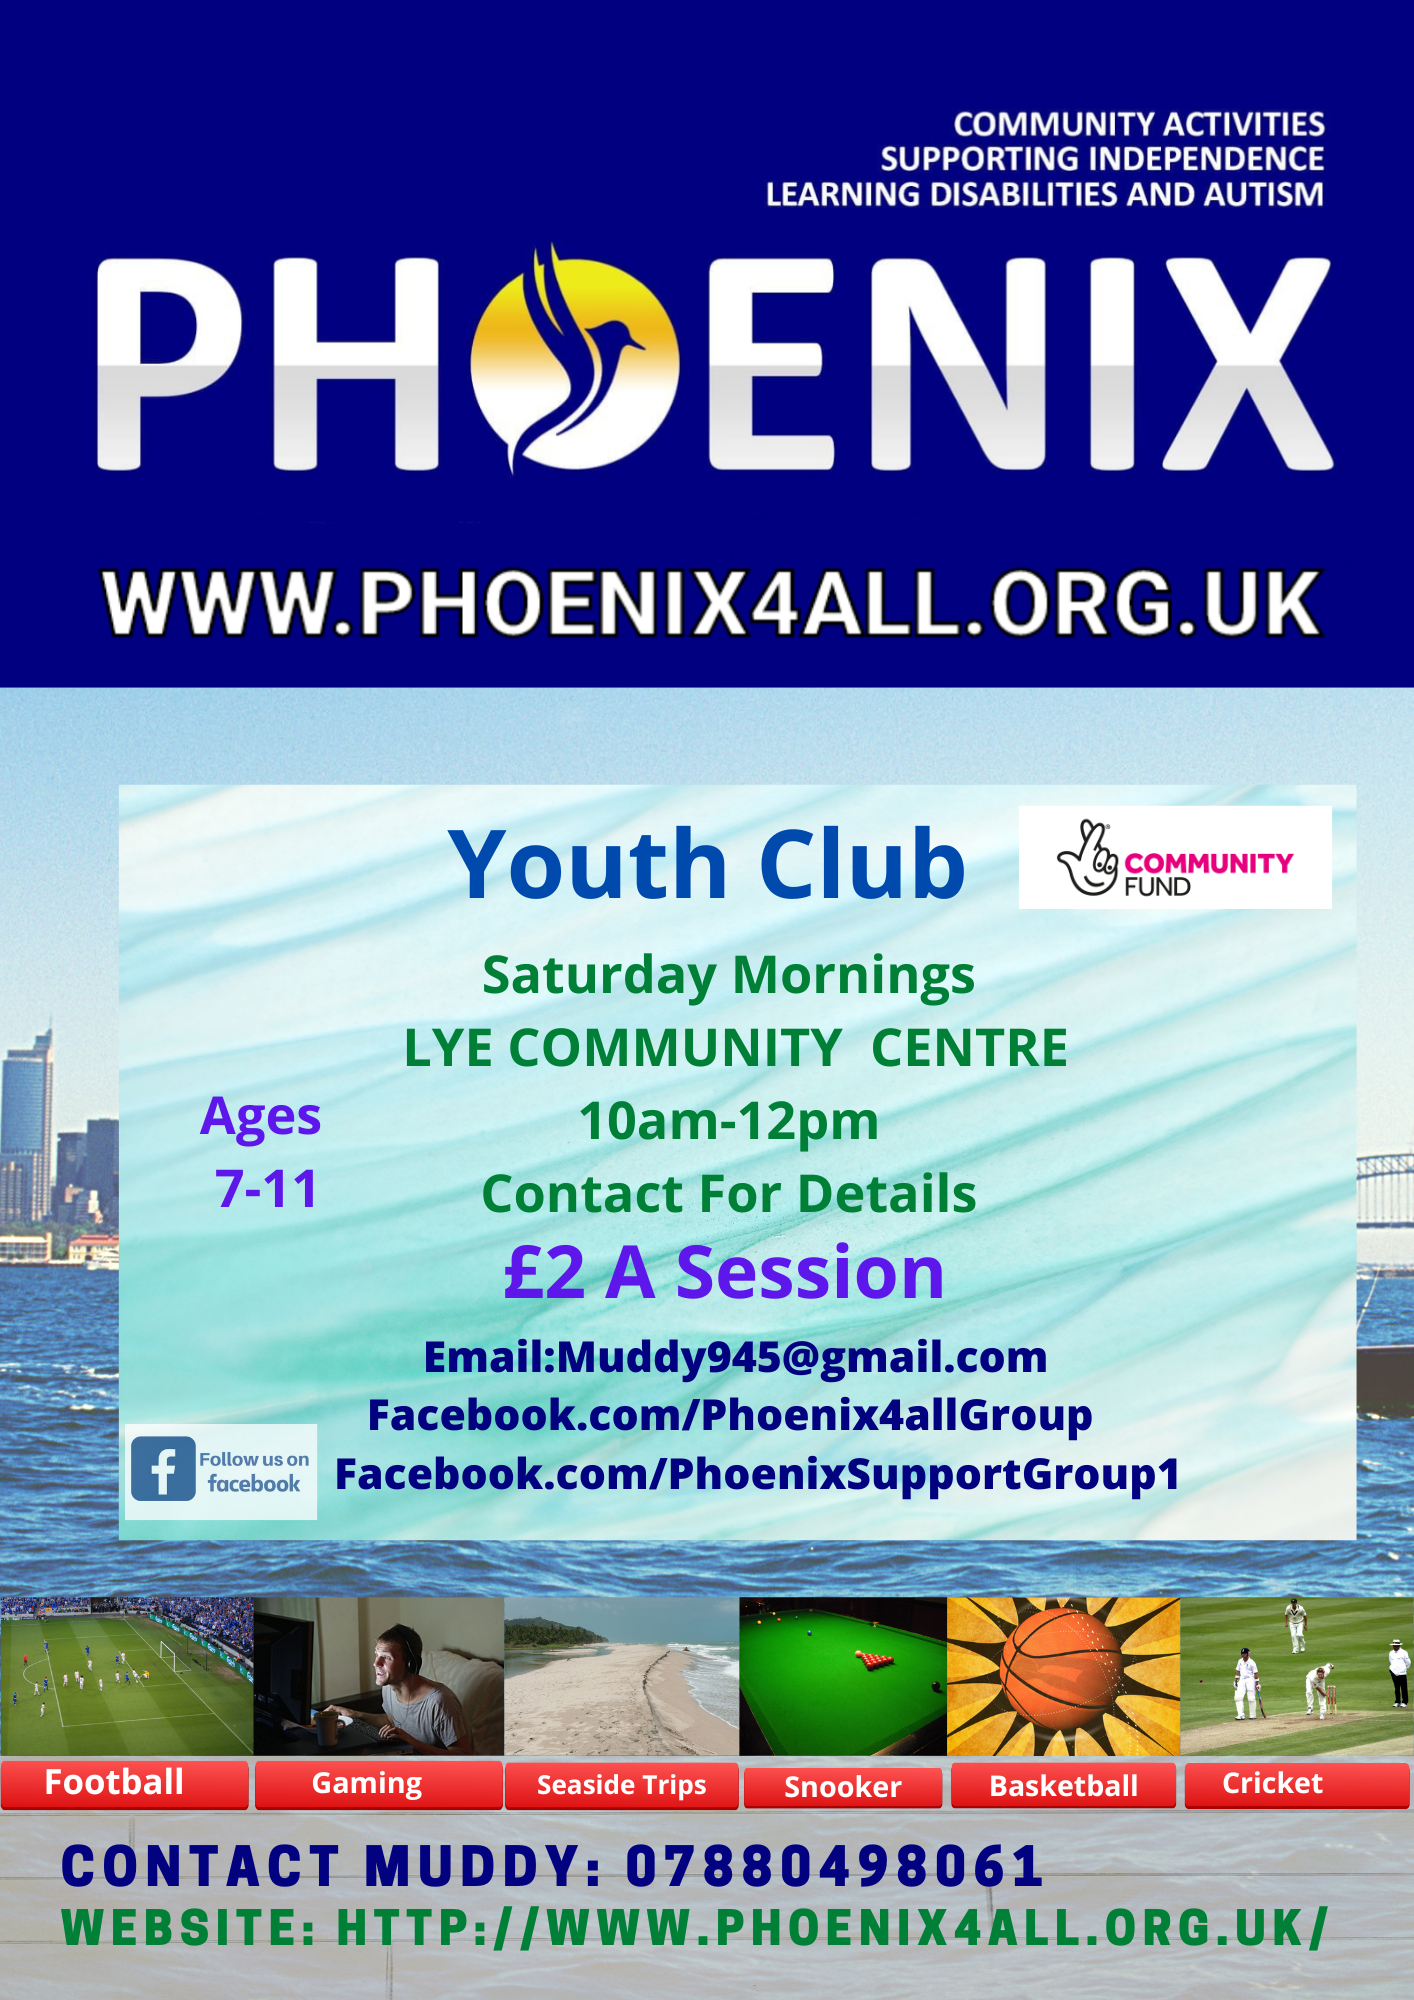 Phoenix4all - Youth Club